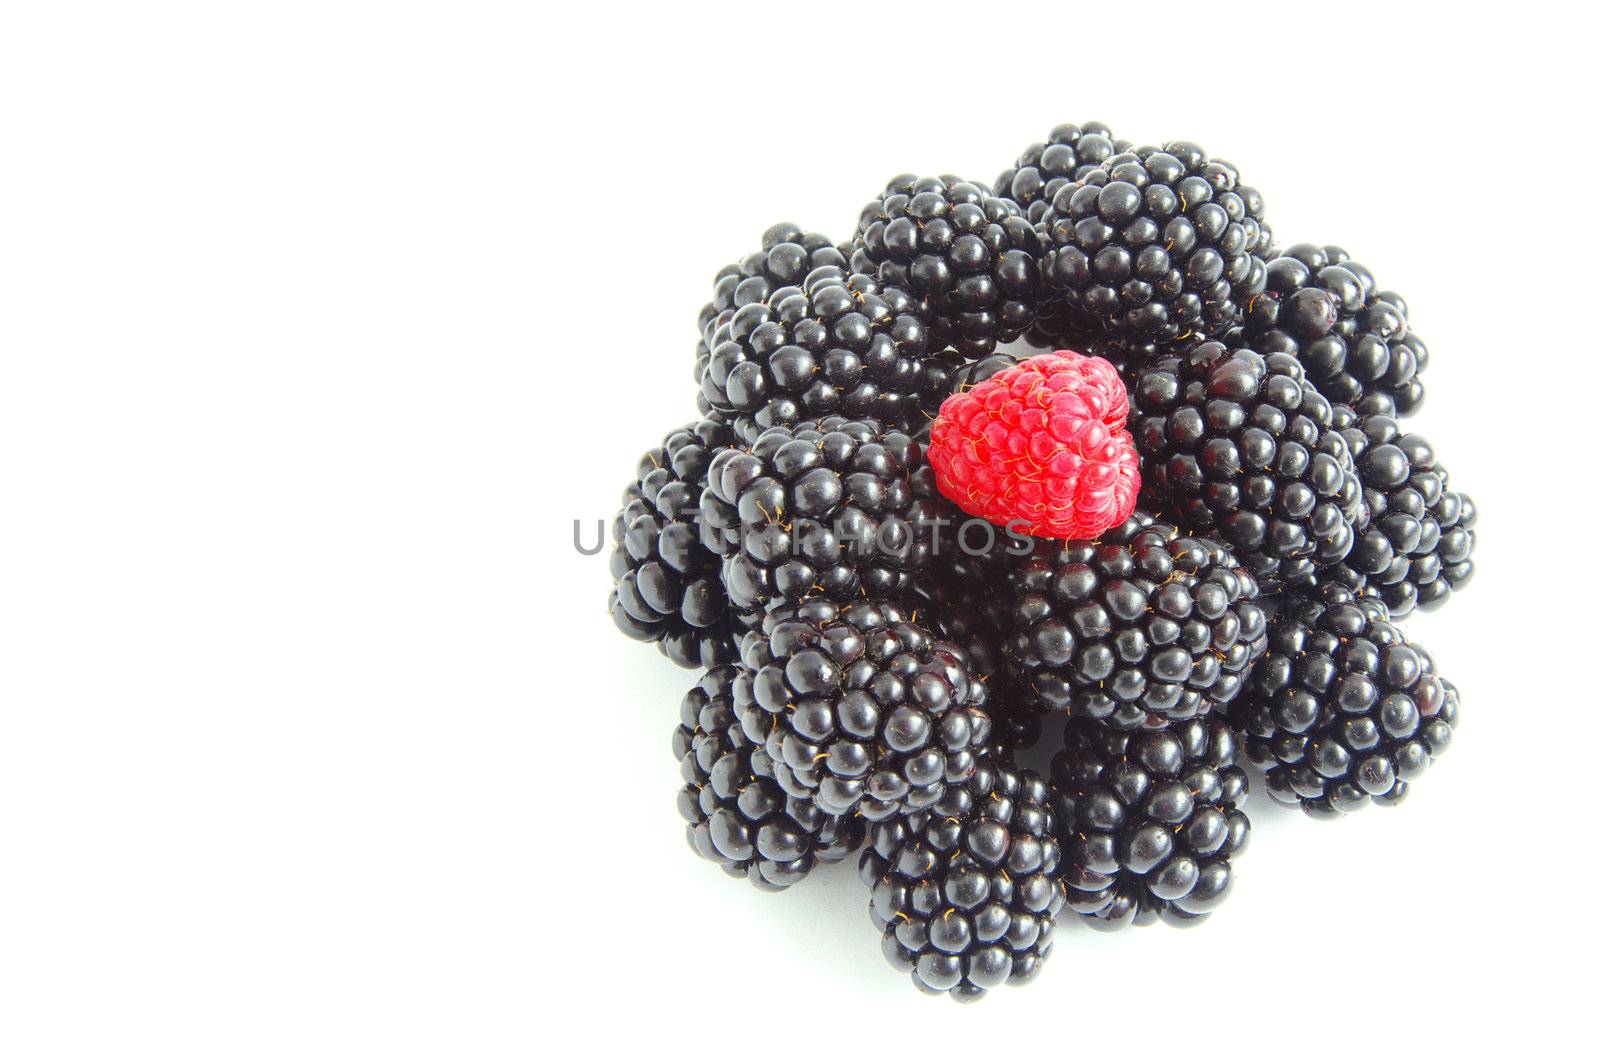 raspberry and blackberry  by Pakhnyushchyy